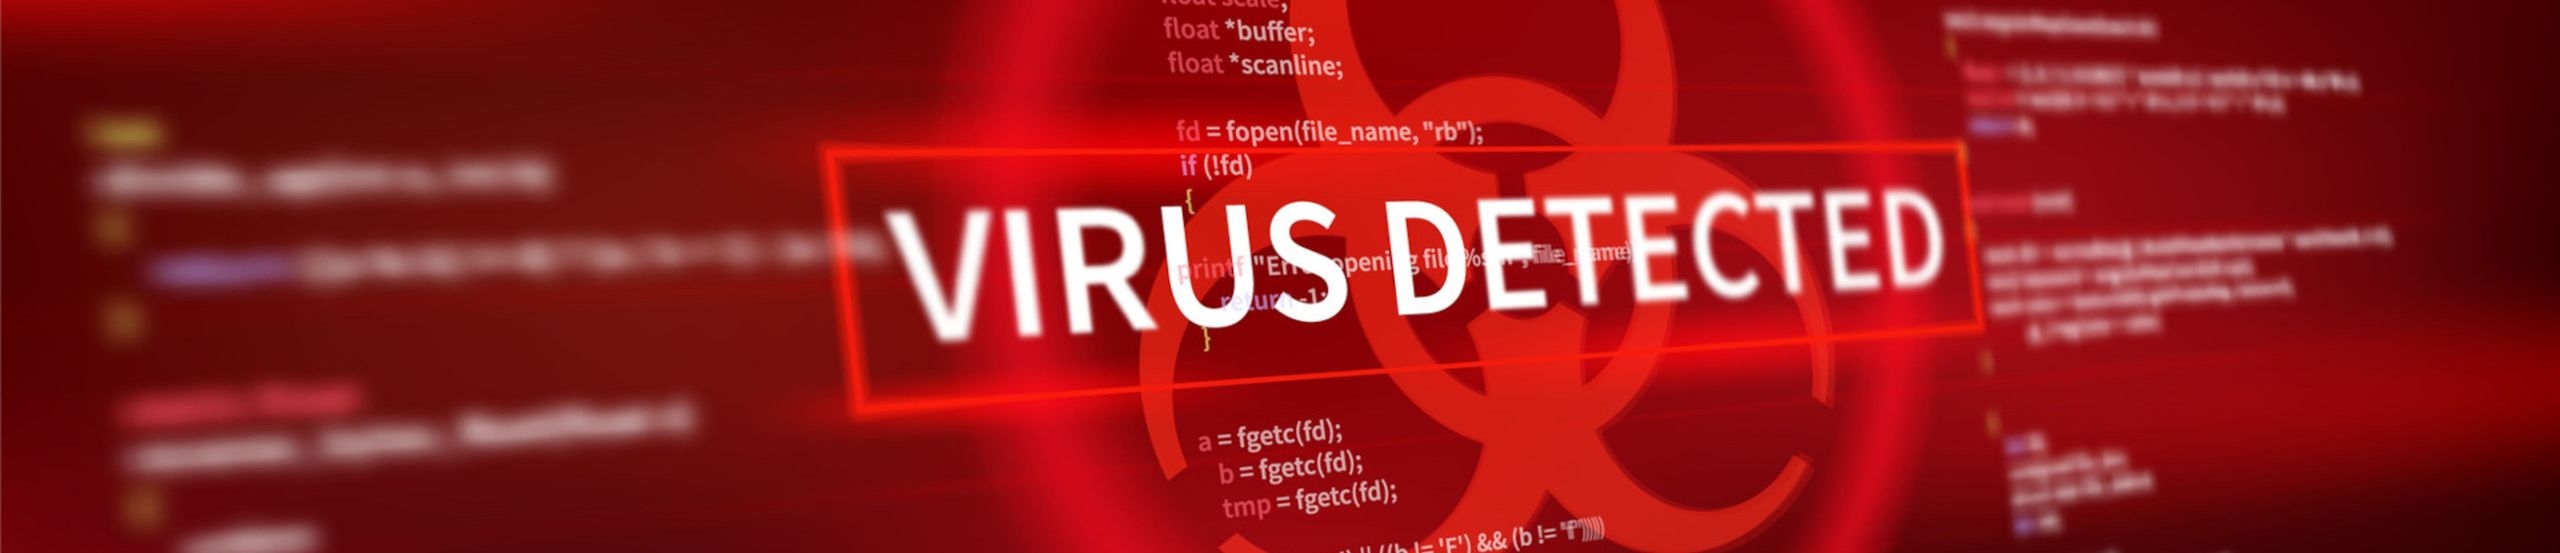 Screenshot mit Programmcode als Bildhintergrund und dem Schriftzug „VIRUS DETECTED“ in der Mitte des Bildes.